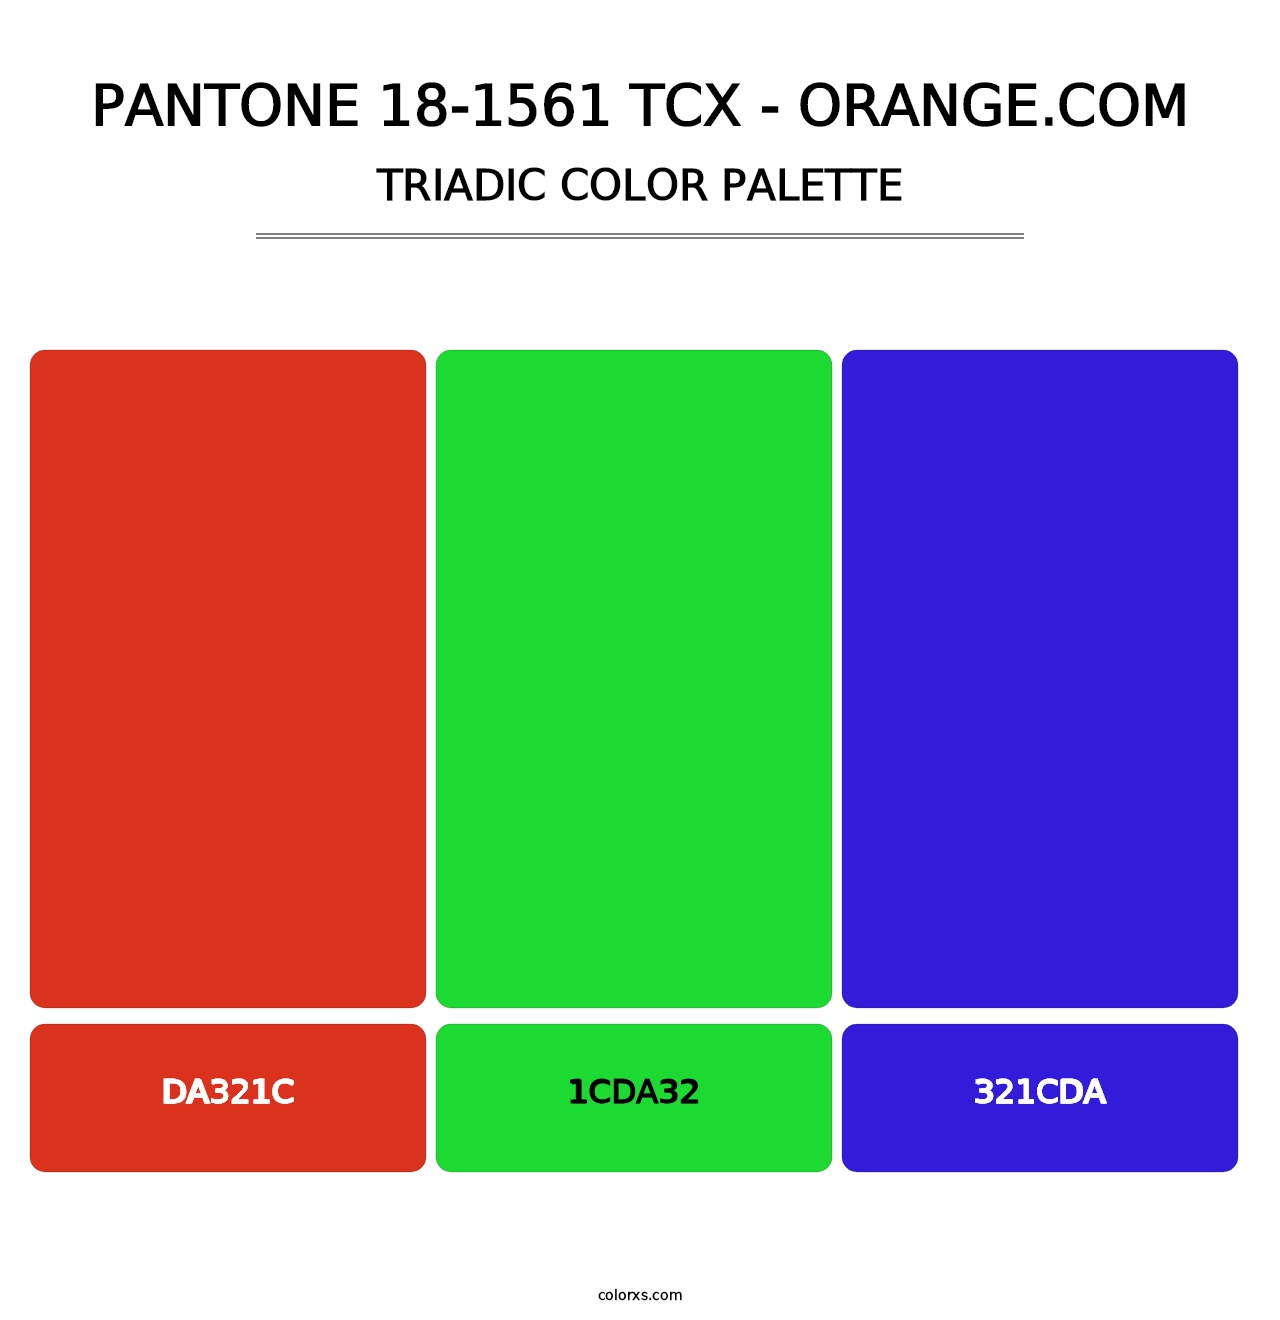 PANTONE 18-1561 TCX - Orange.com - Triadic Color Palette